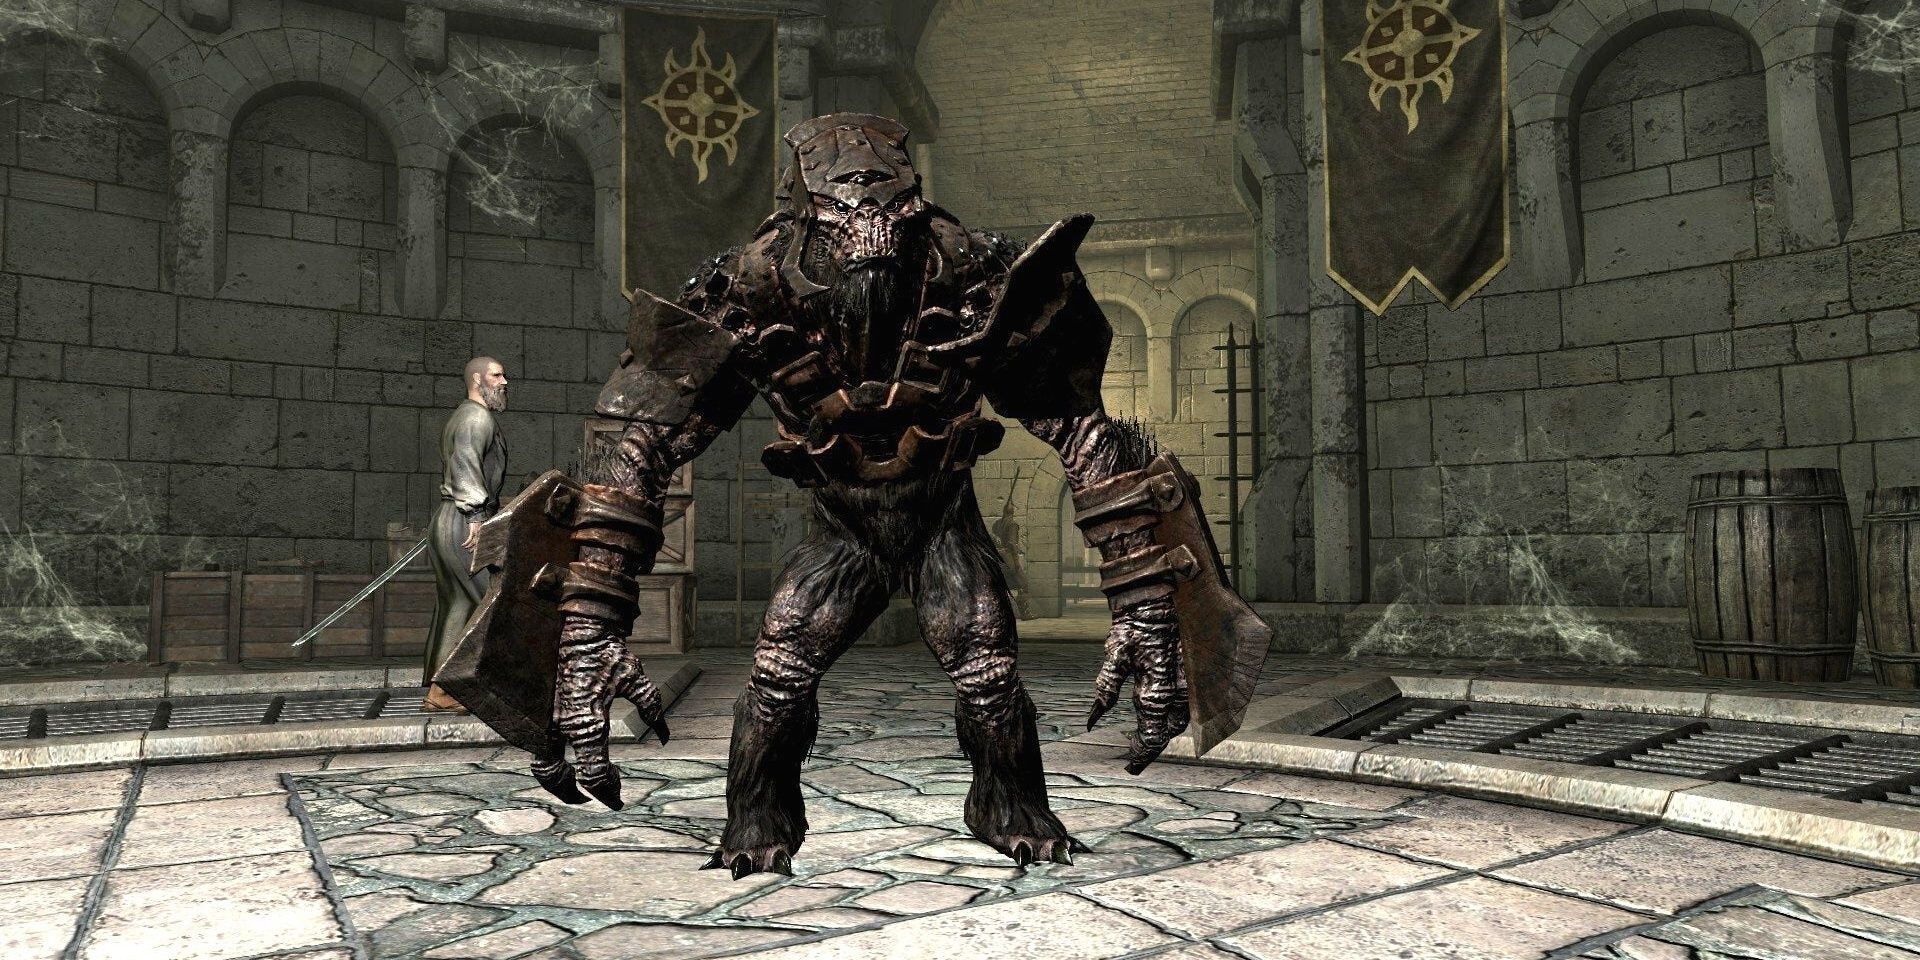 Armored Troll in Skyrim Dawnguard